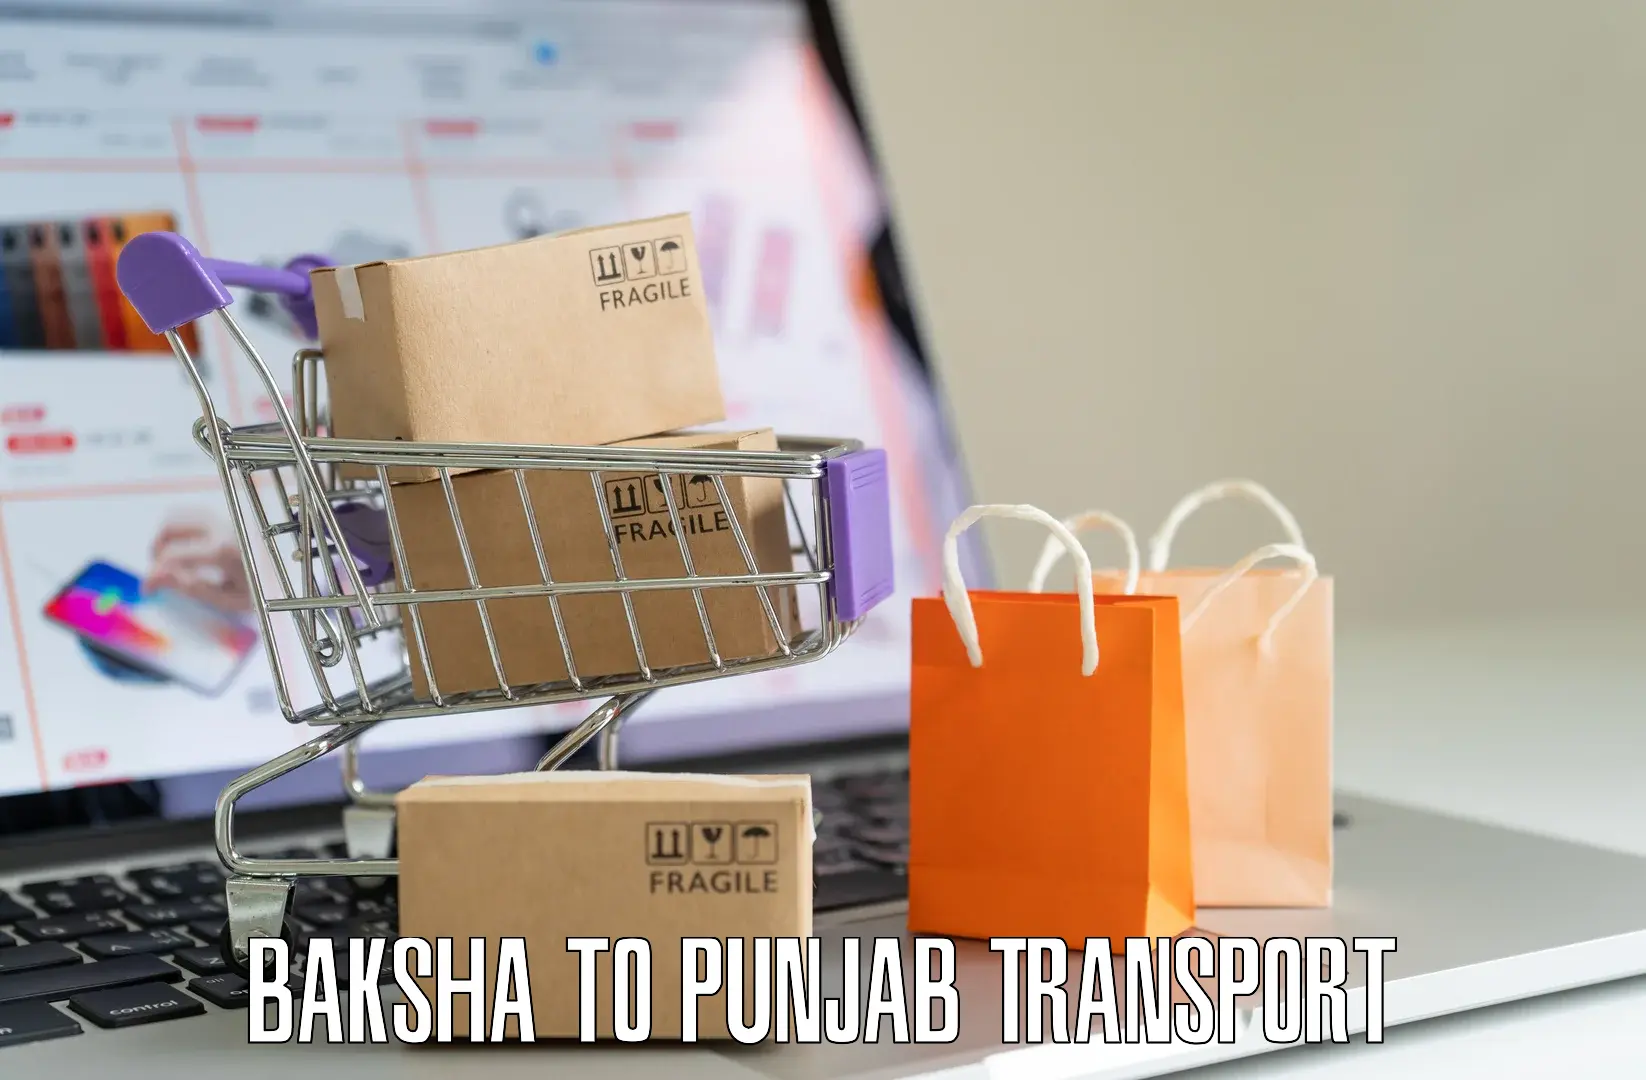 Vehicle courier services Baksha to Punjab